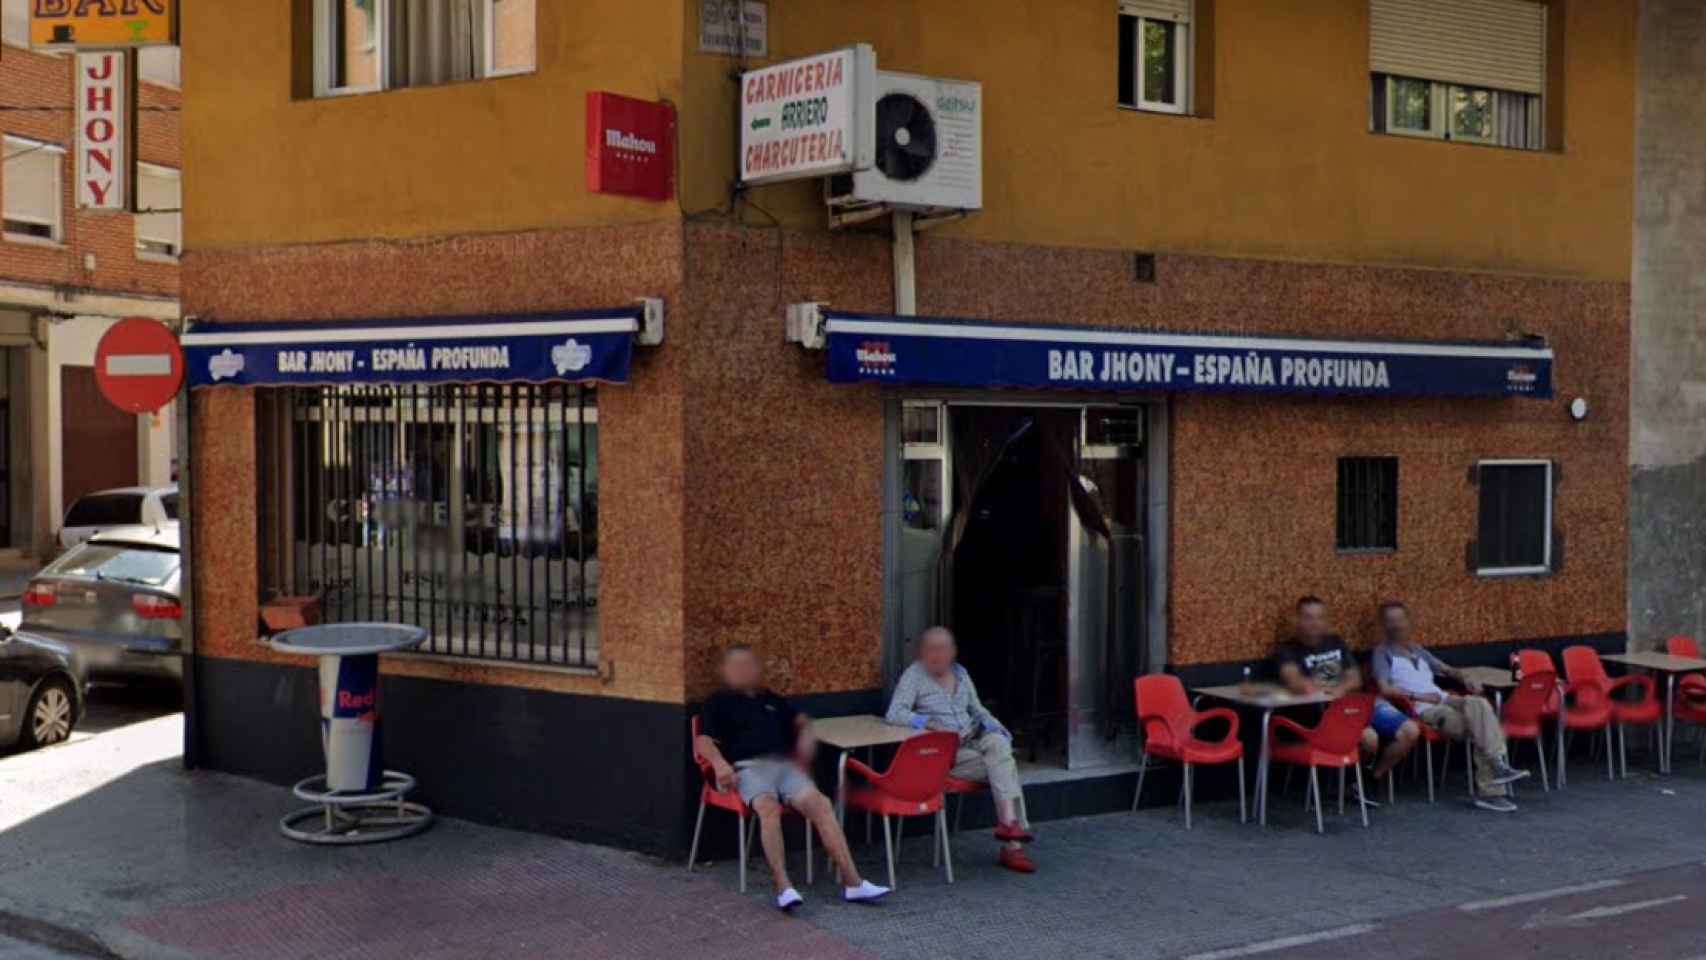 Bar Johny-España Profunda de Talavera. Foto: Google Maps.